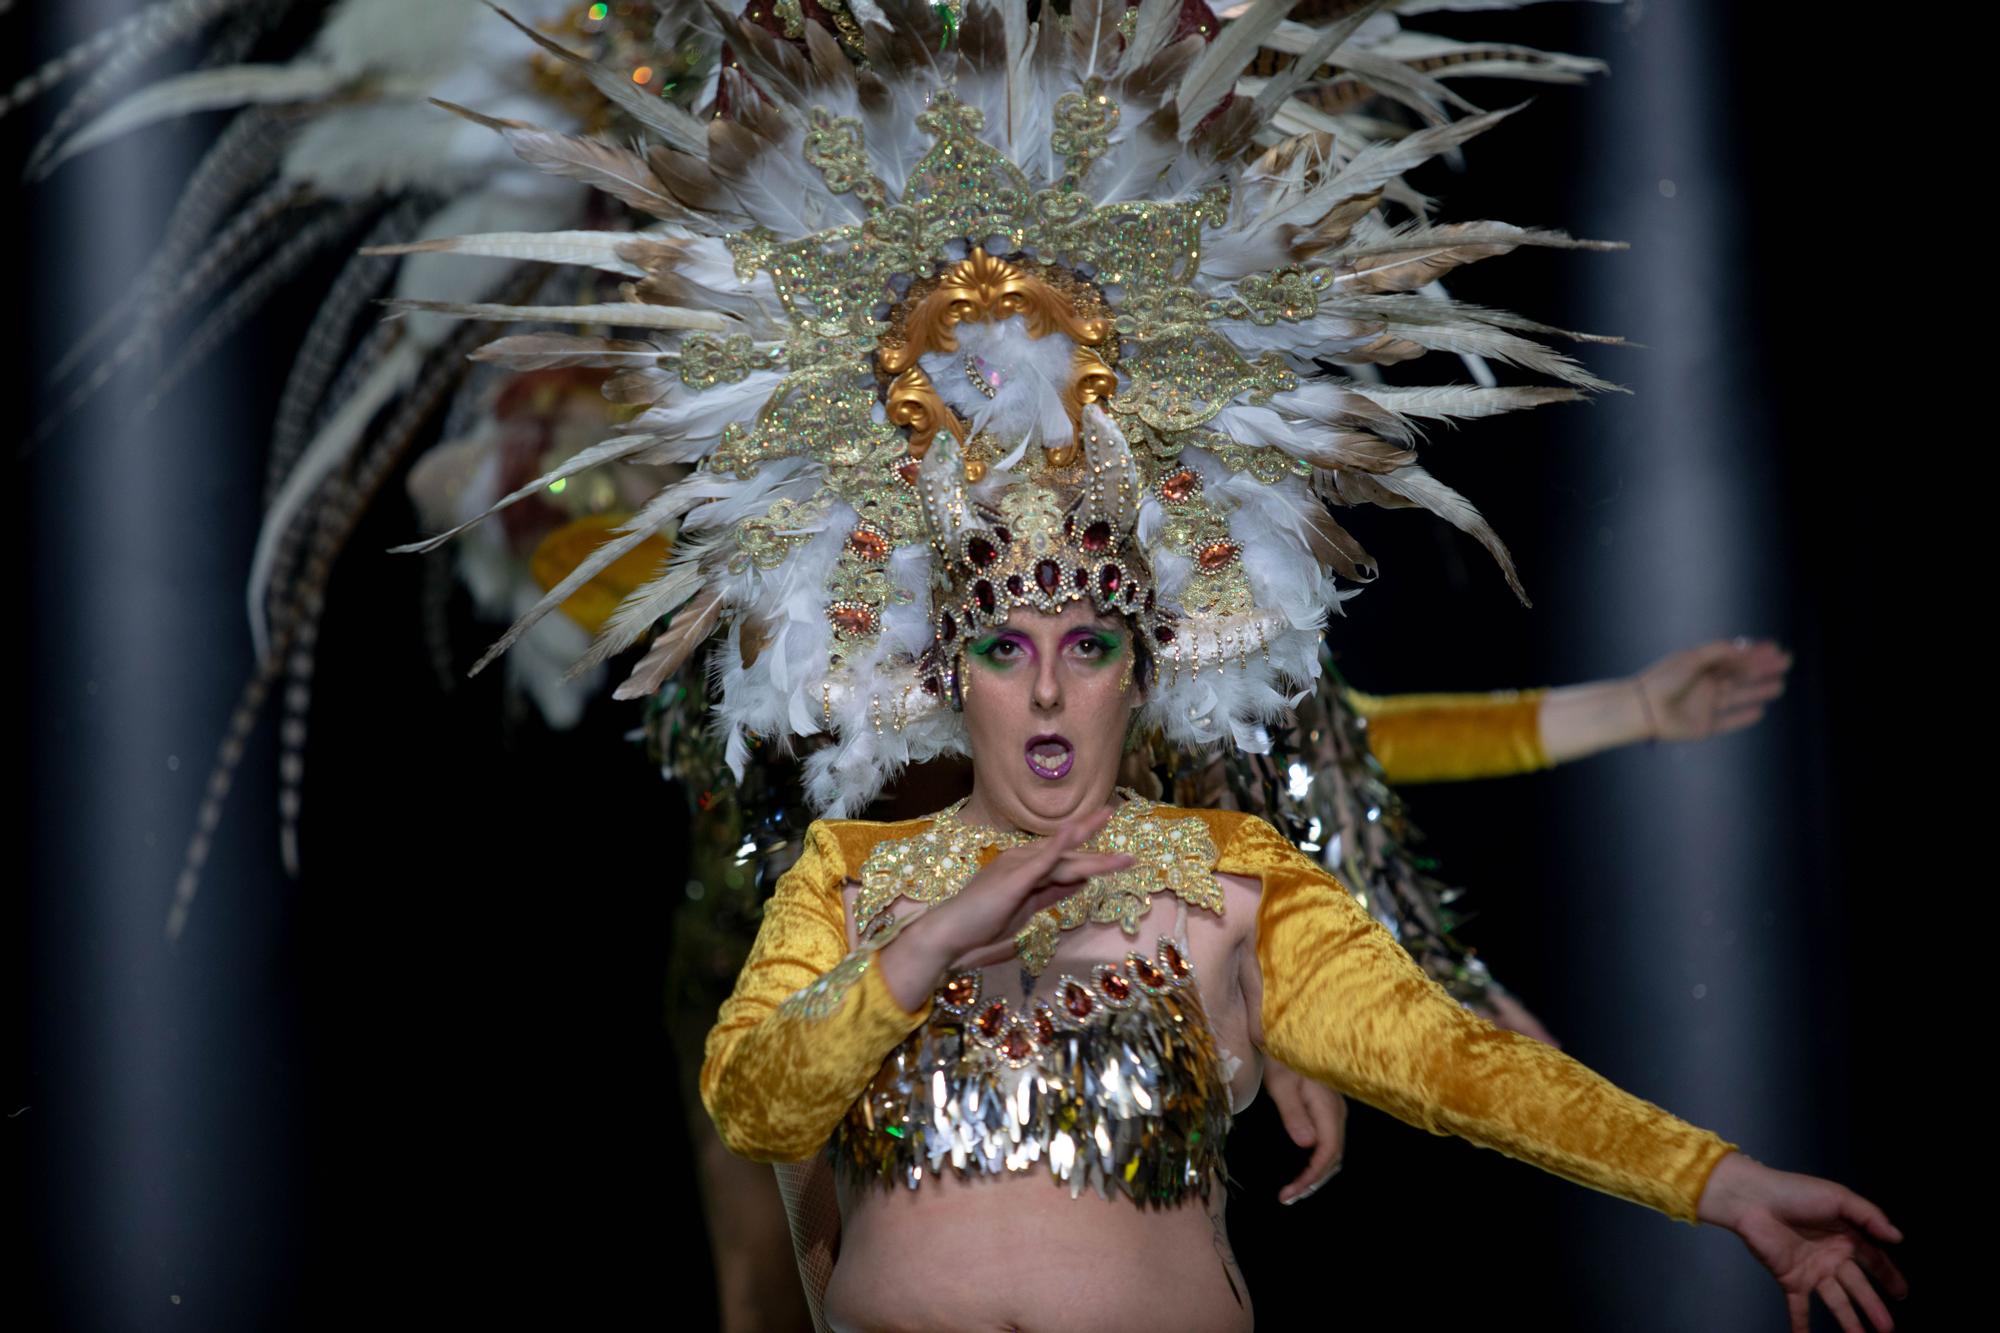 Así fue la gala para elegir a la Reina Drag del Carnaval de Cartagena